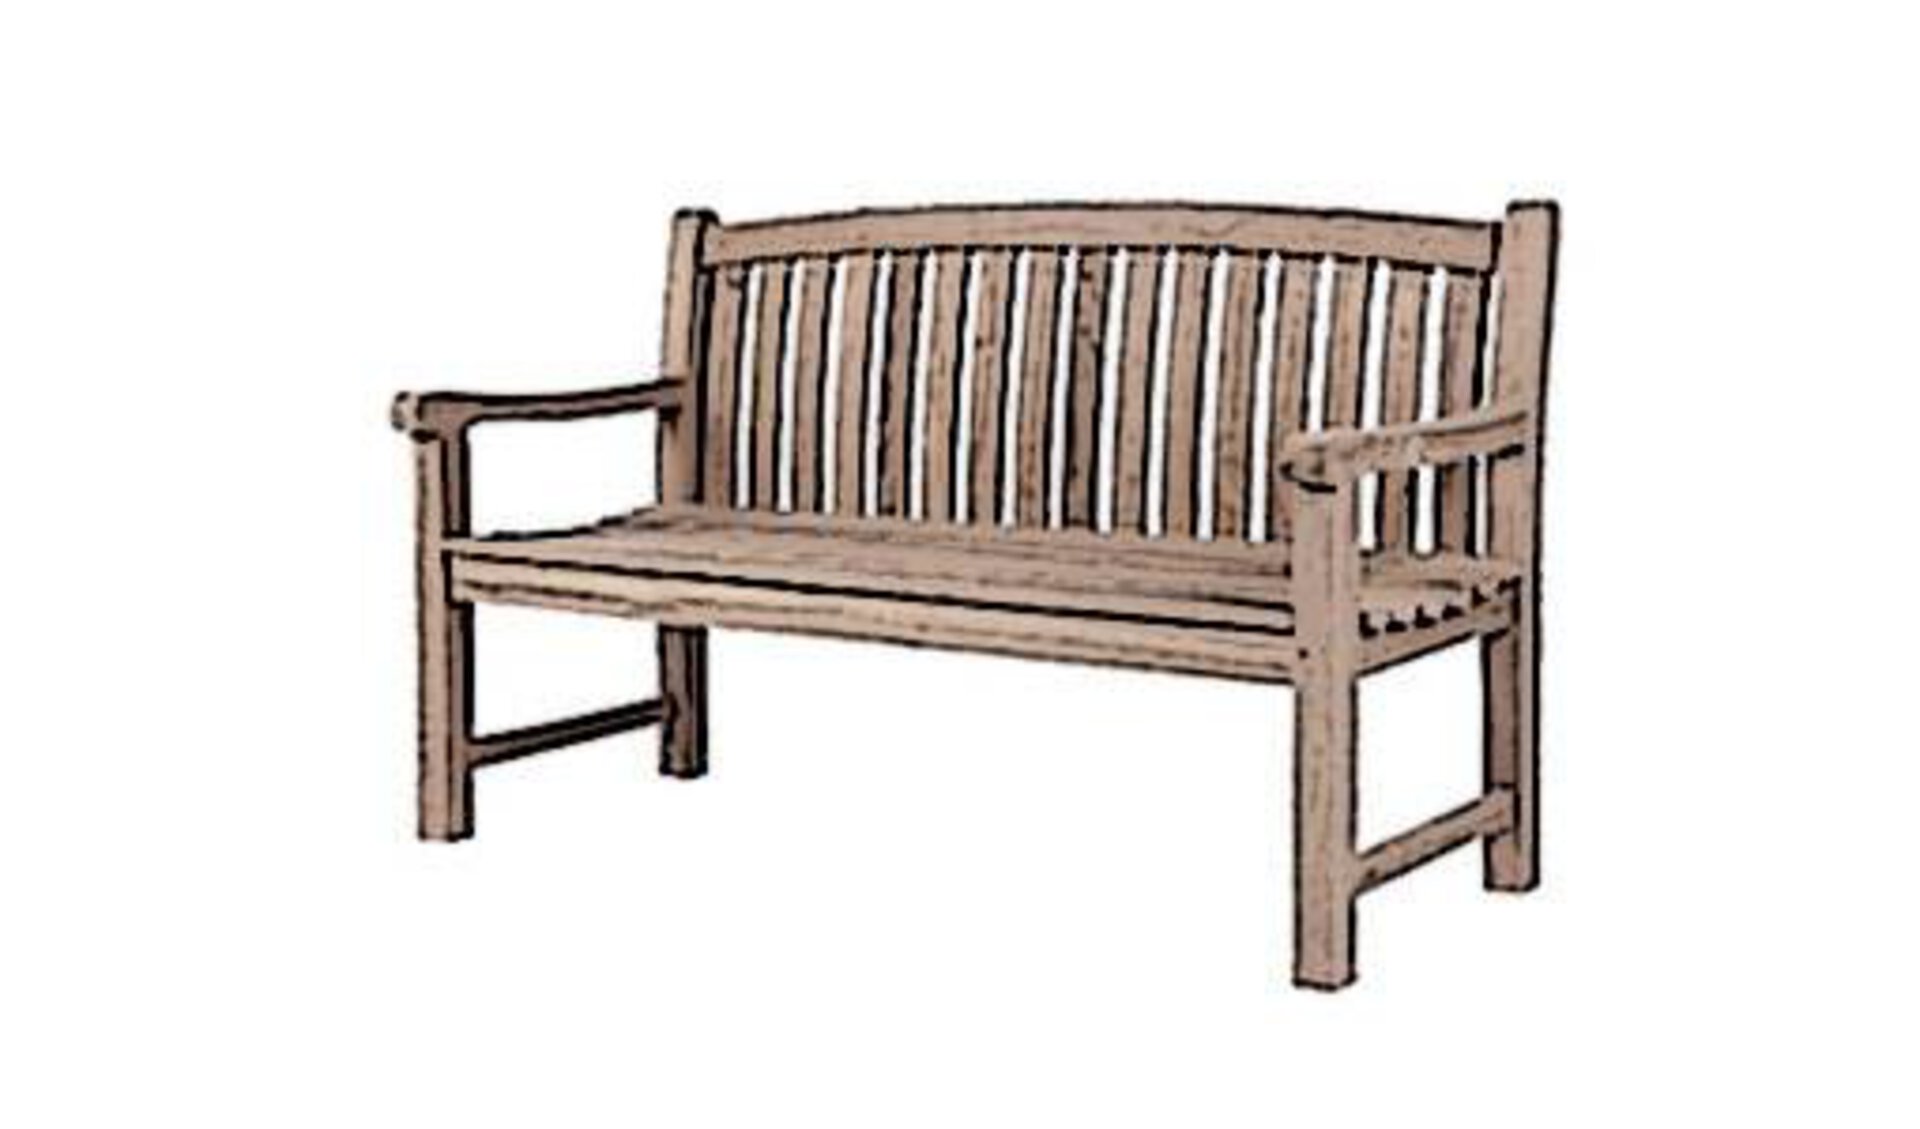 Gartenbank aus Holz. Die stilisierte Abbildung der Bank für den Außenbereich steht Sinnbildlich für alle Sitzbänke innerhalb der Kategorie "Garten".